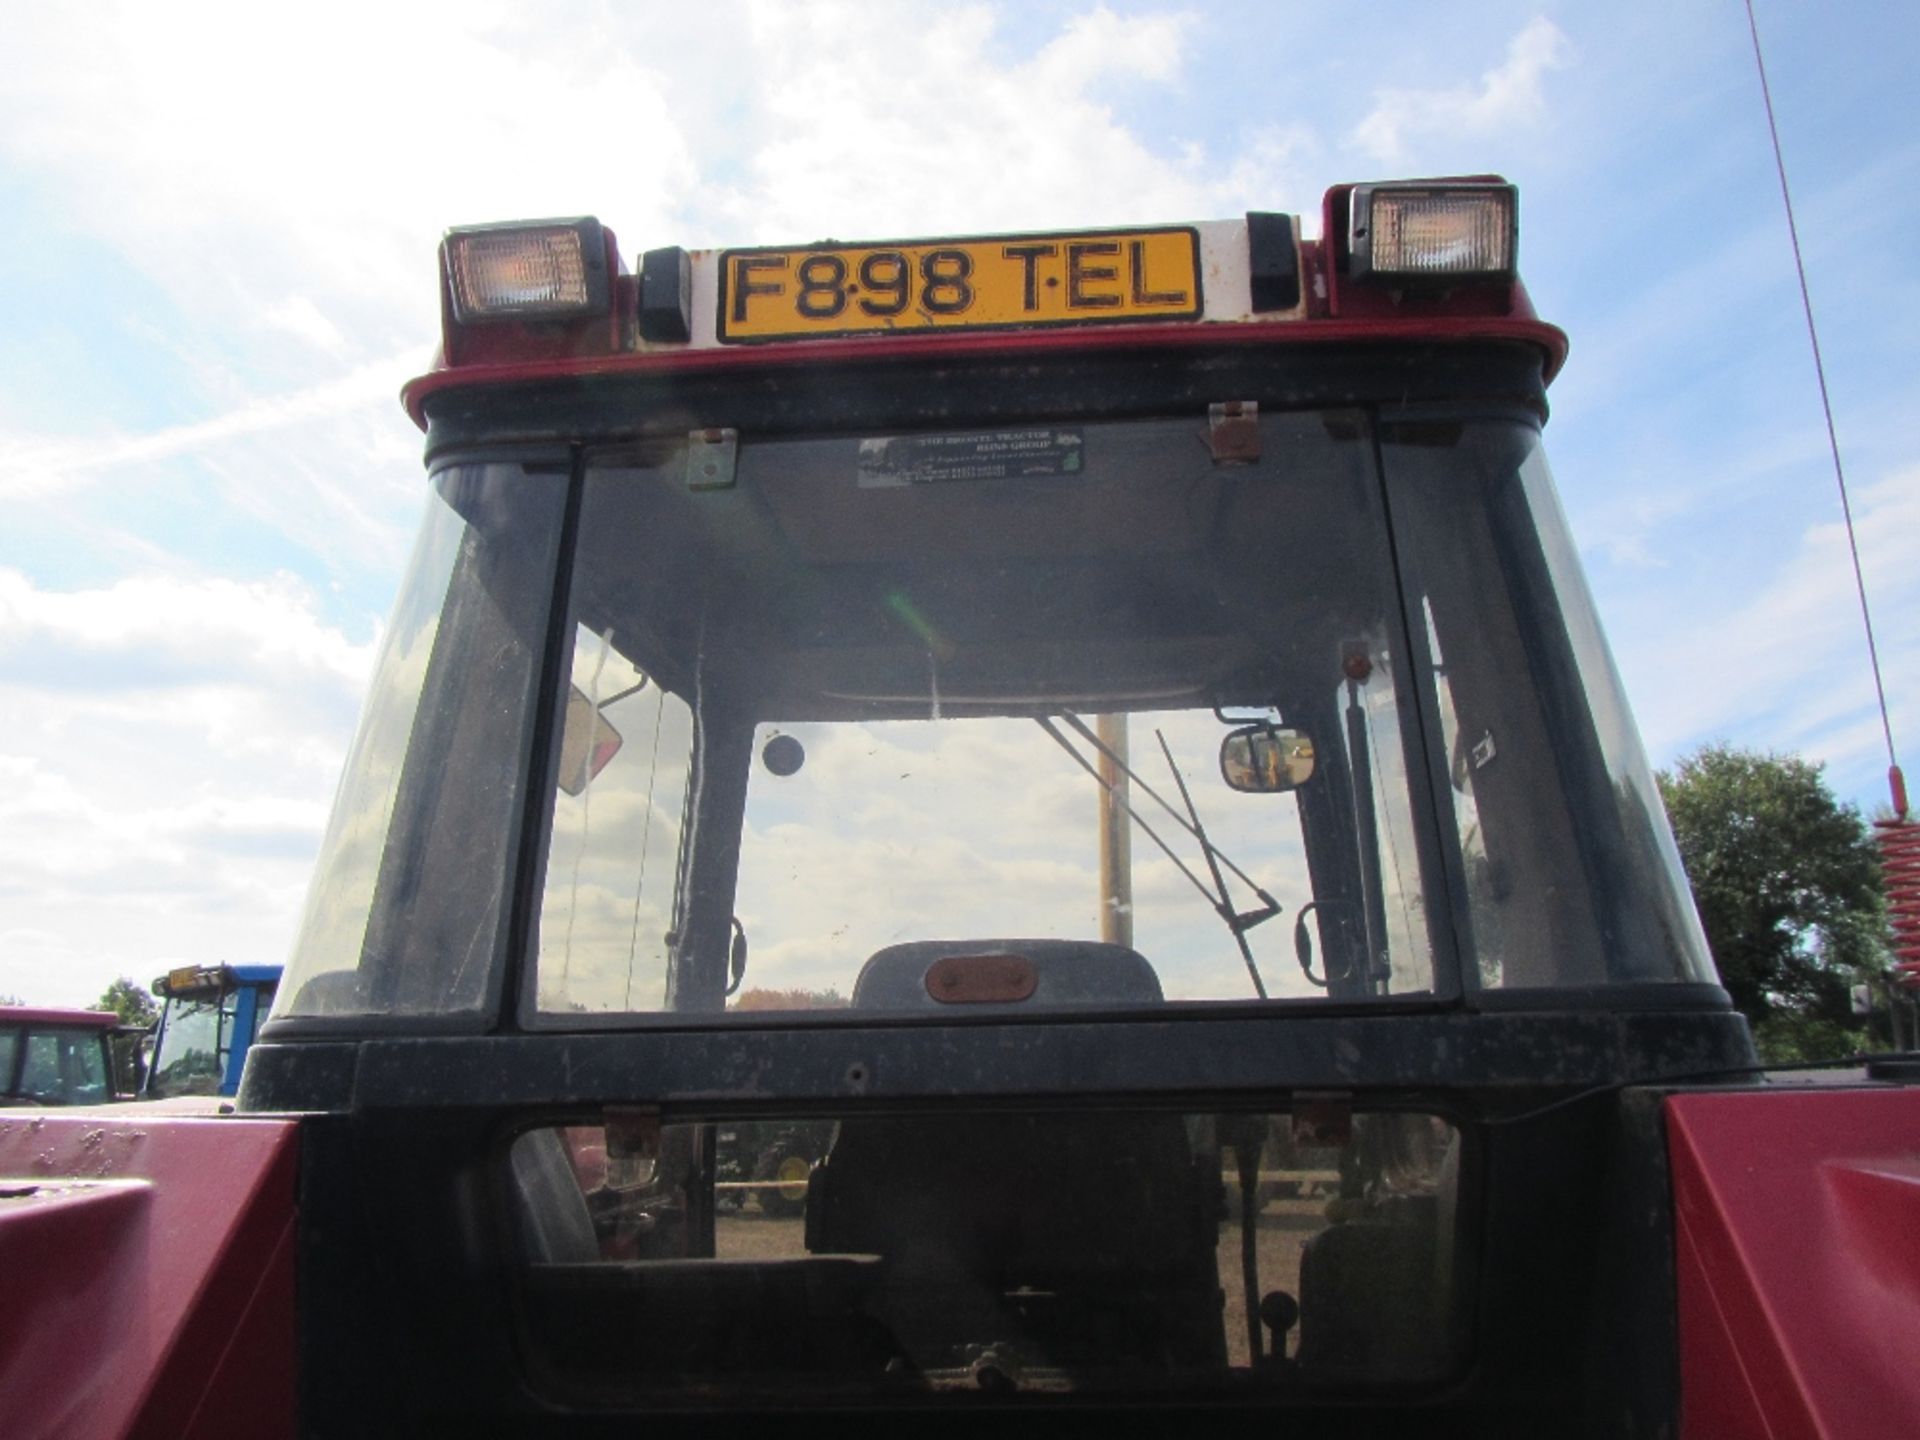 Case 1056XL 4wd 40k Tractor with Air Con Reg No F898 TEL Ser No D031011 - Image 8 of 17